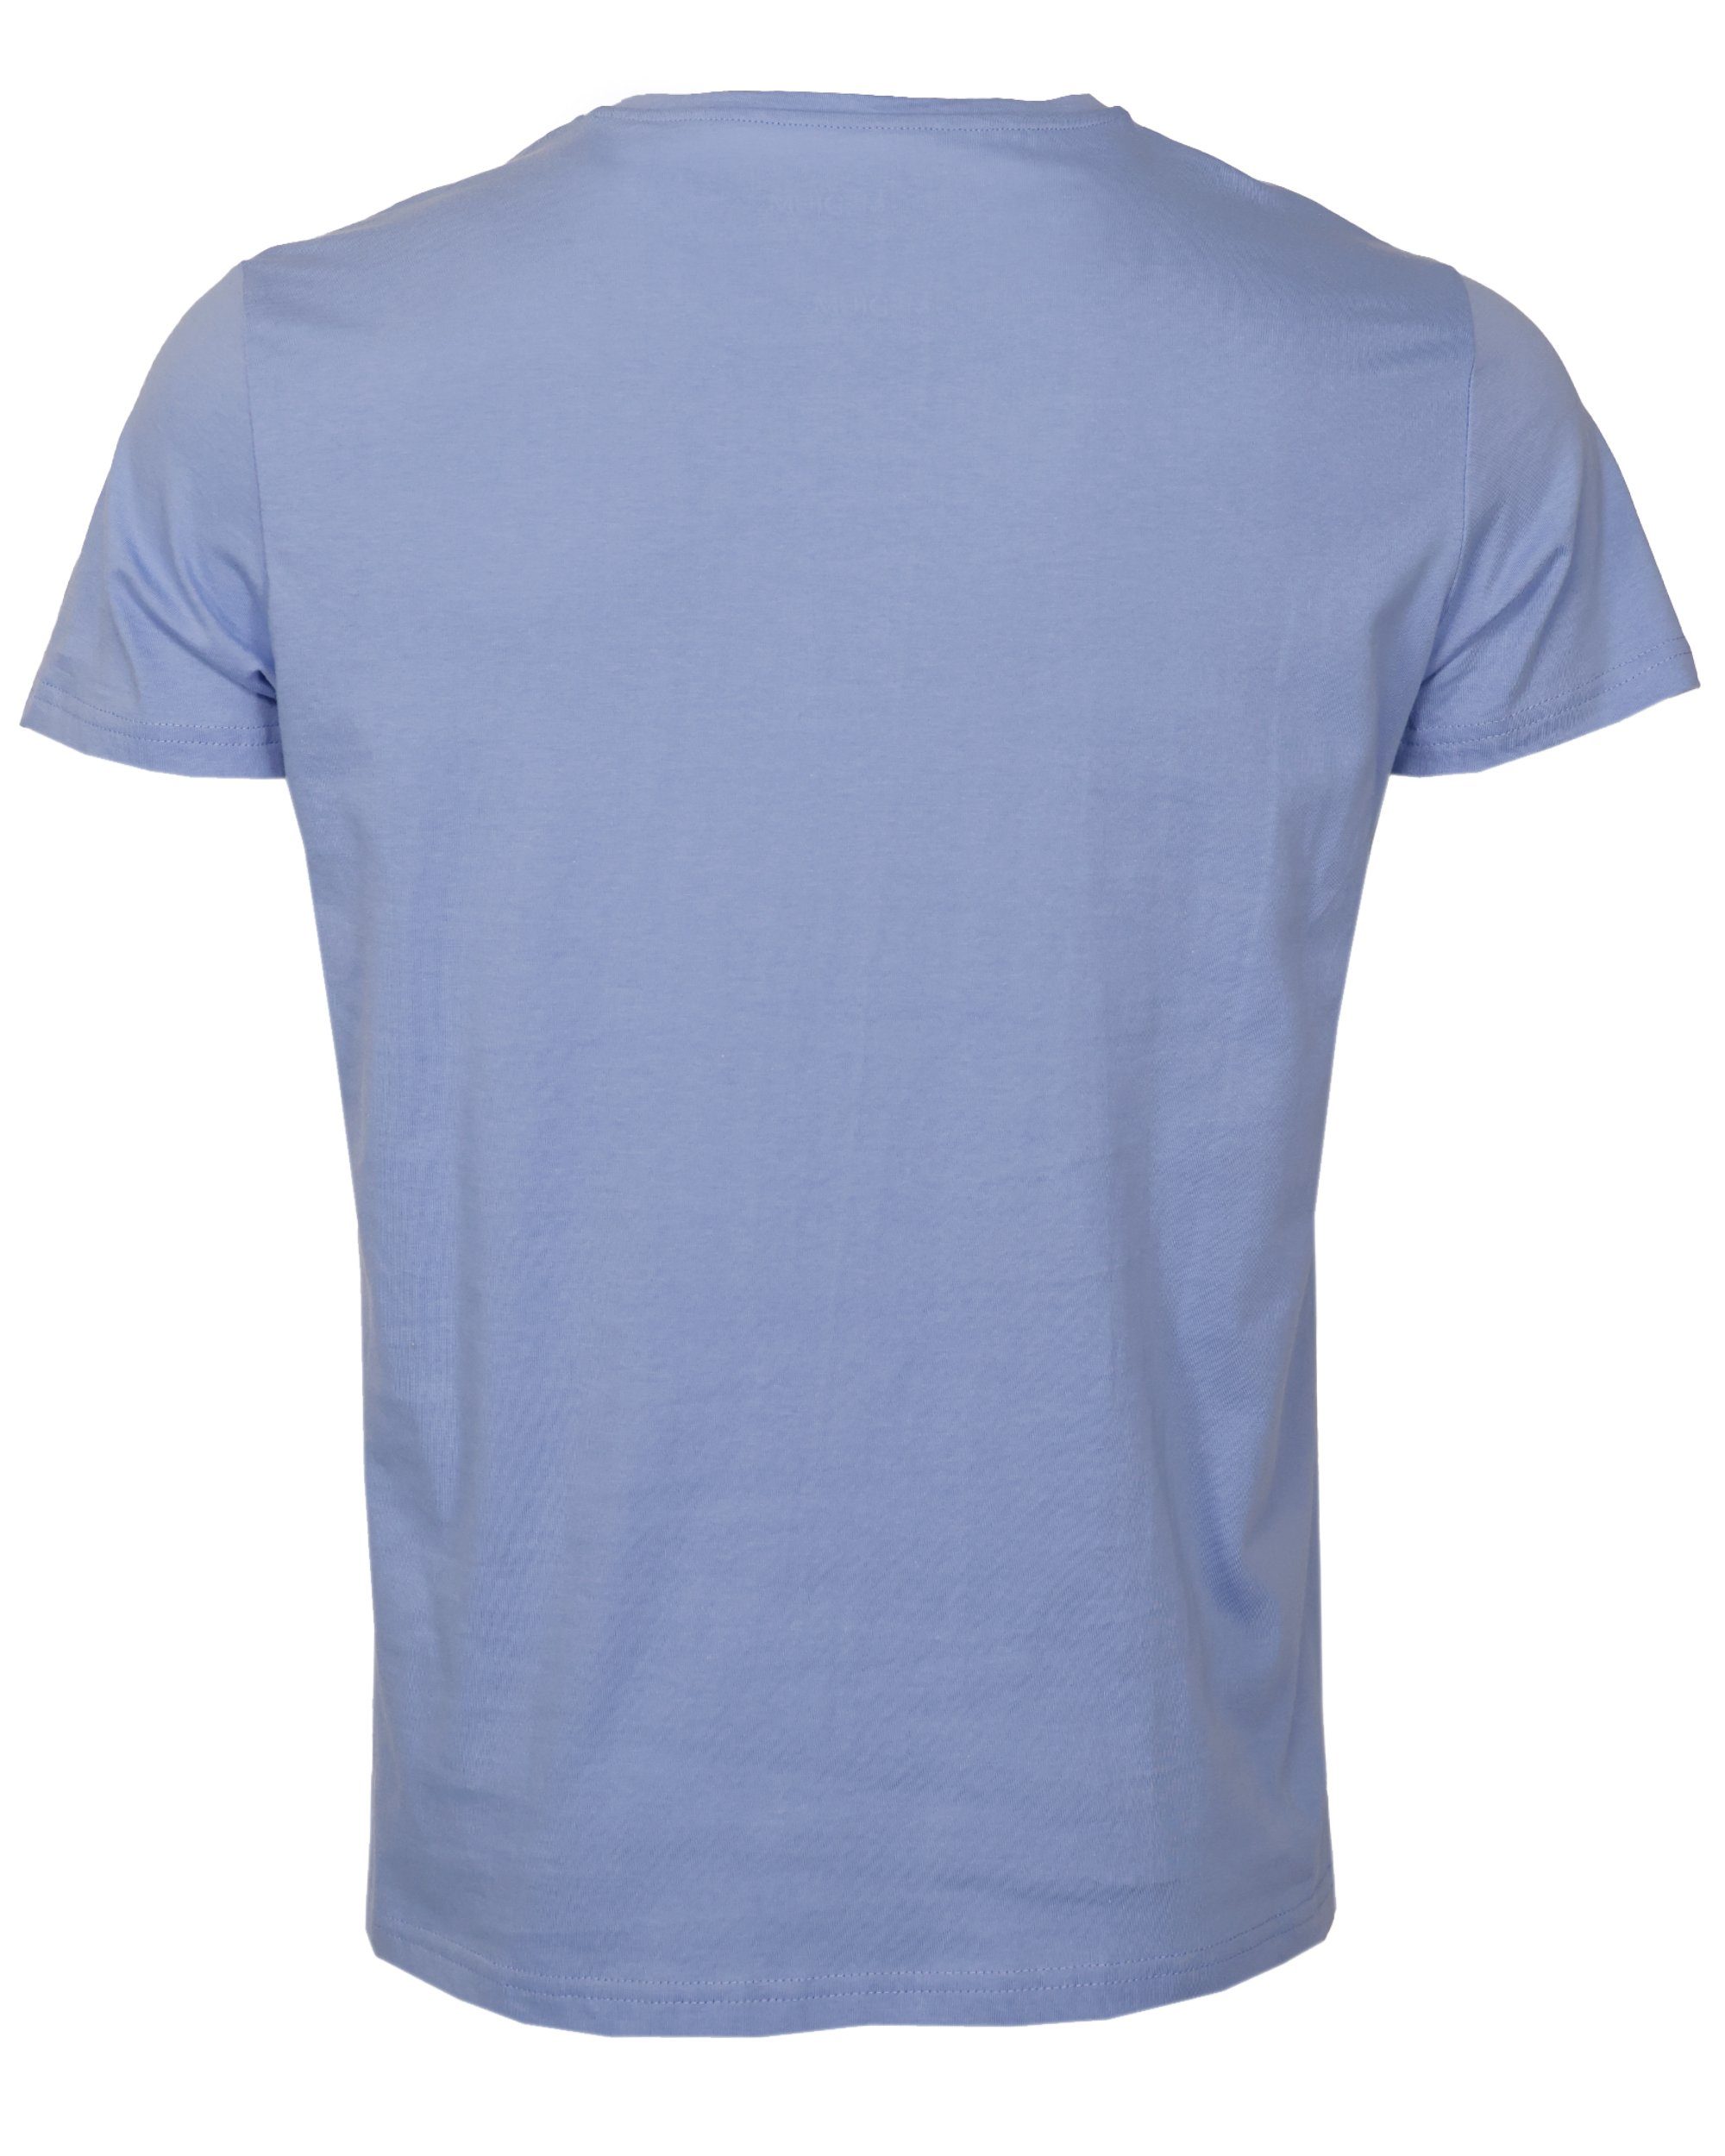 light GUN T-Shirt blue TOP TG20213036